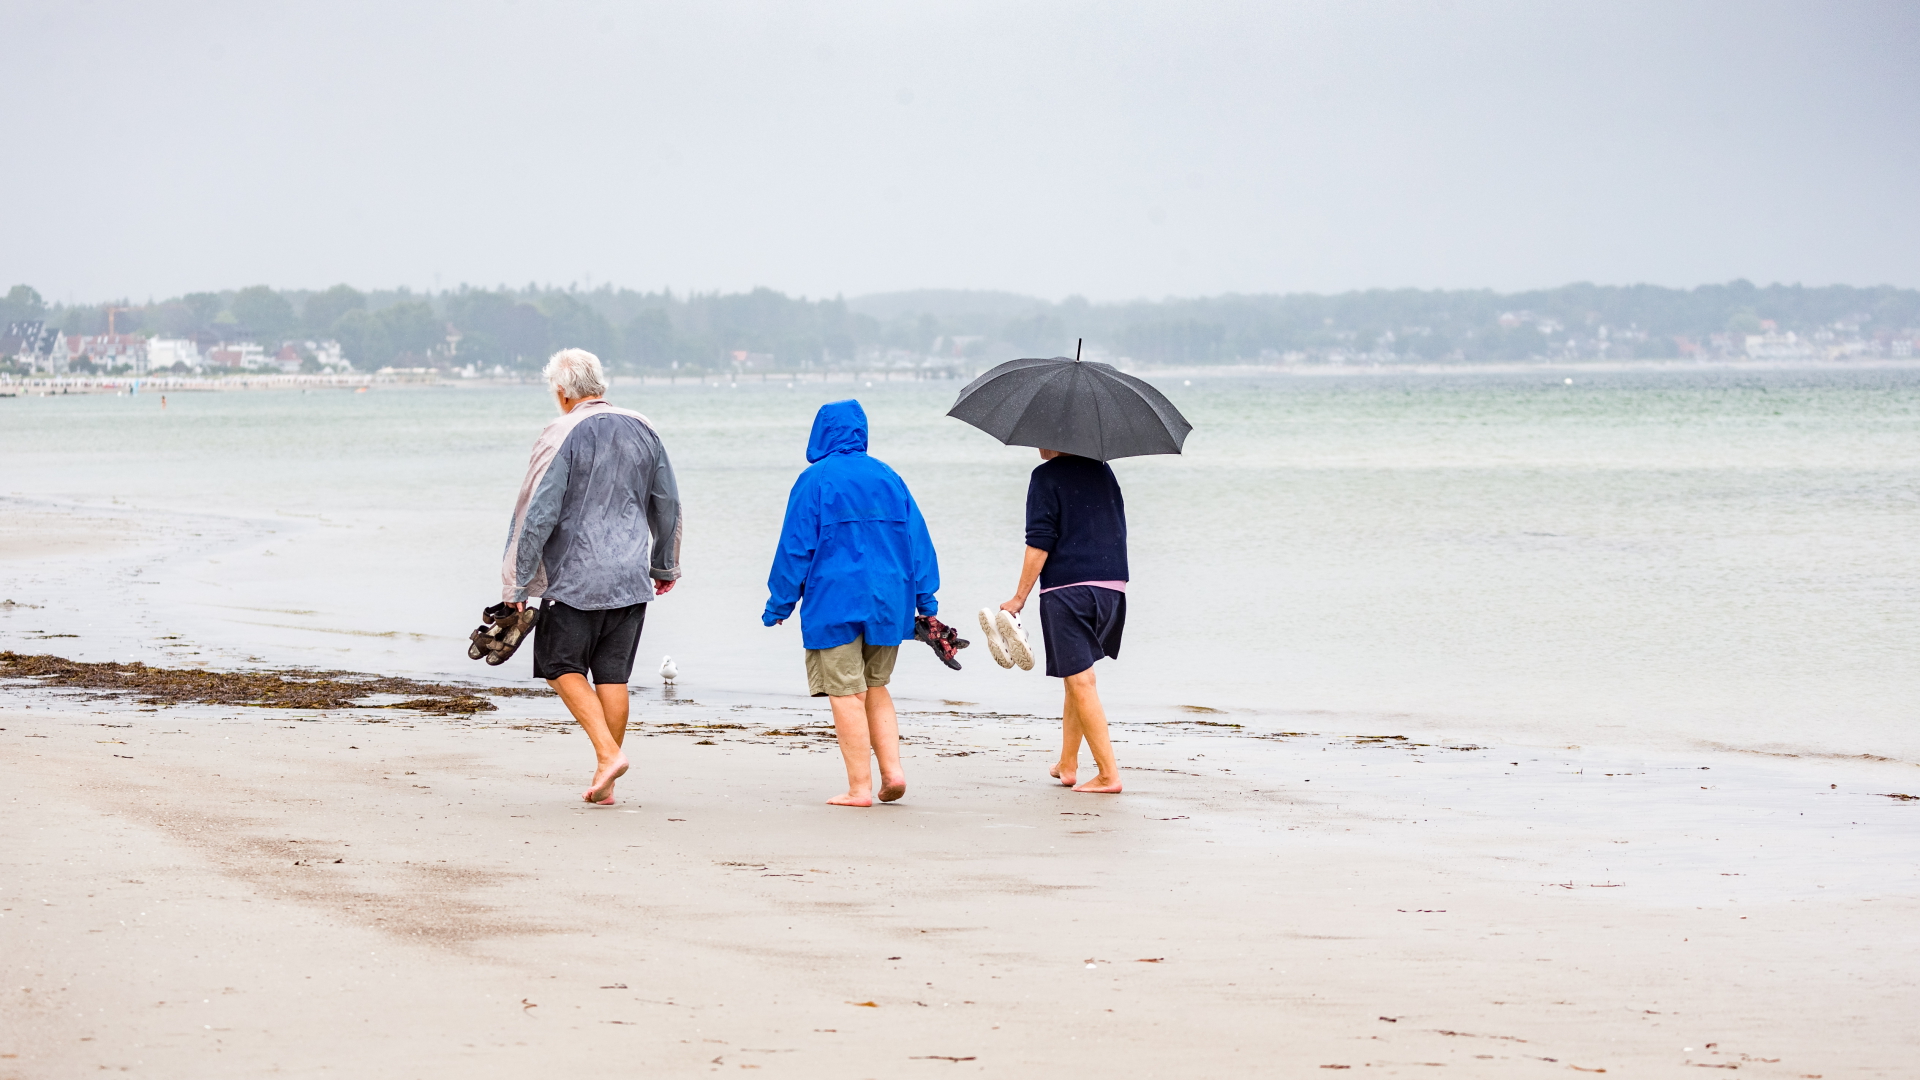 Drei Spaziergänger in Regenjacken und mit einem Regenschirm gehen am Strand entlang.  | dpa